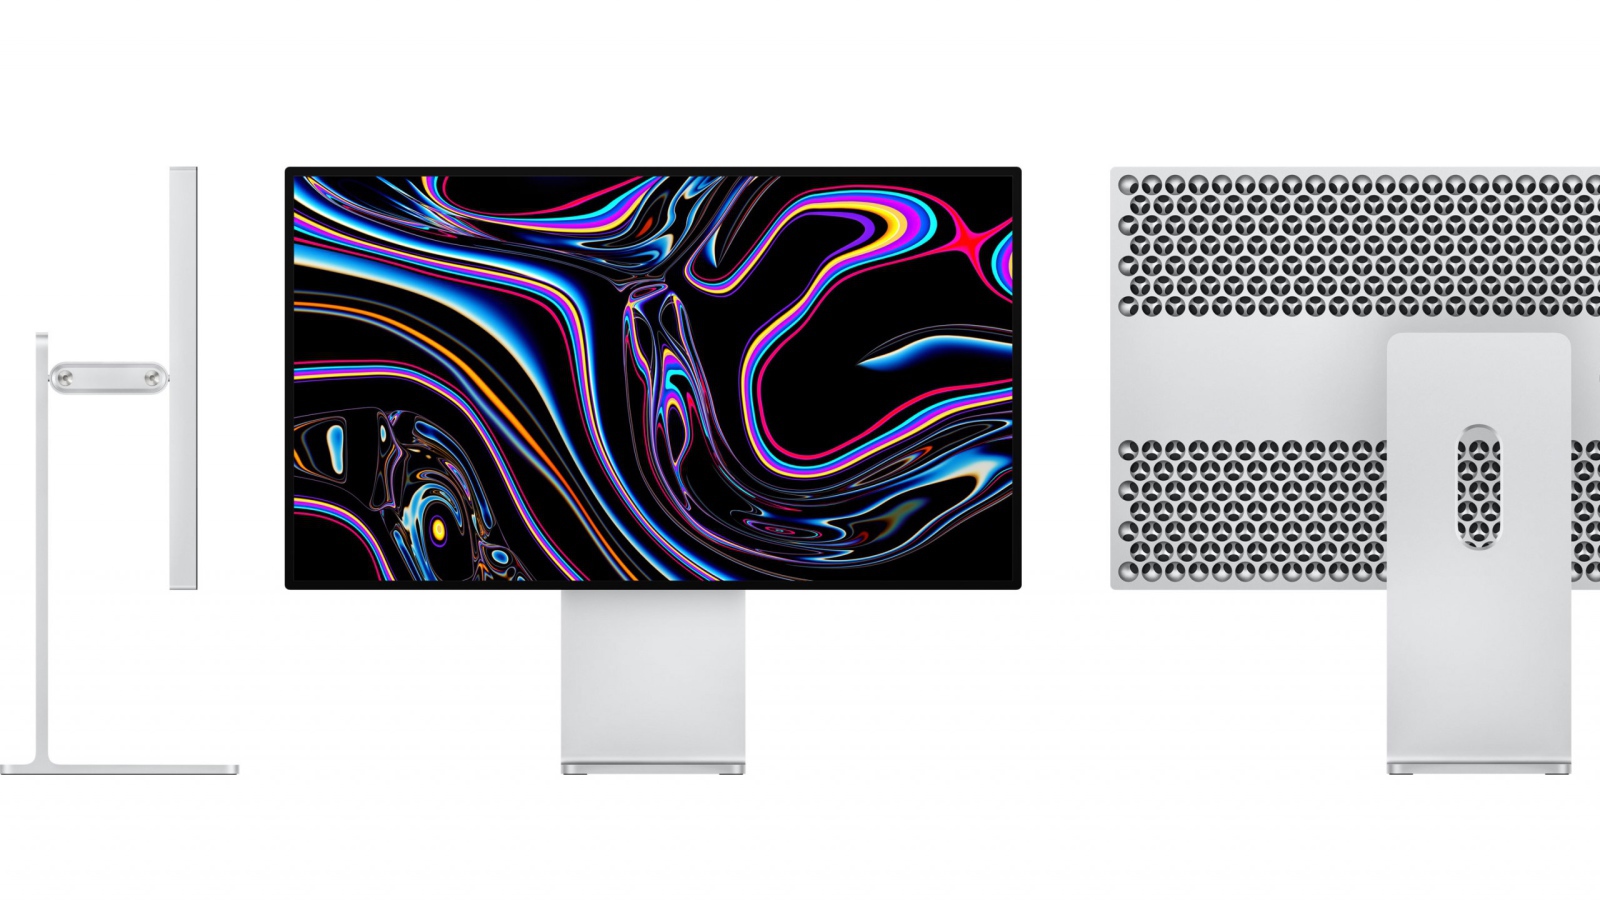 Монитор Apple Pro Display XDR, 2019 на белом фоне